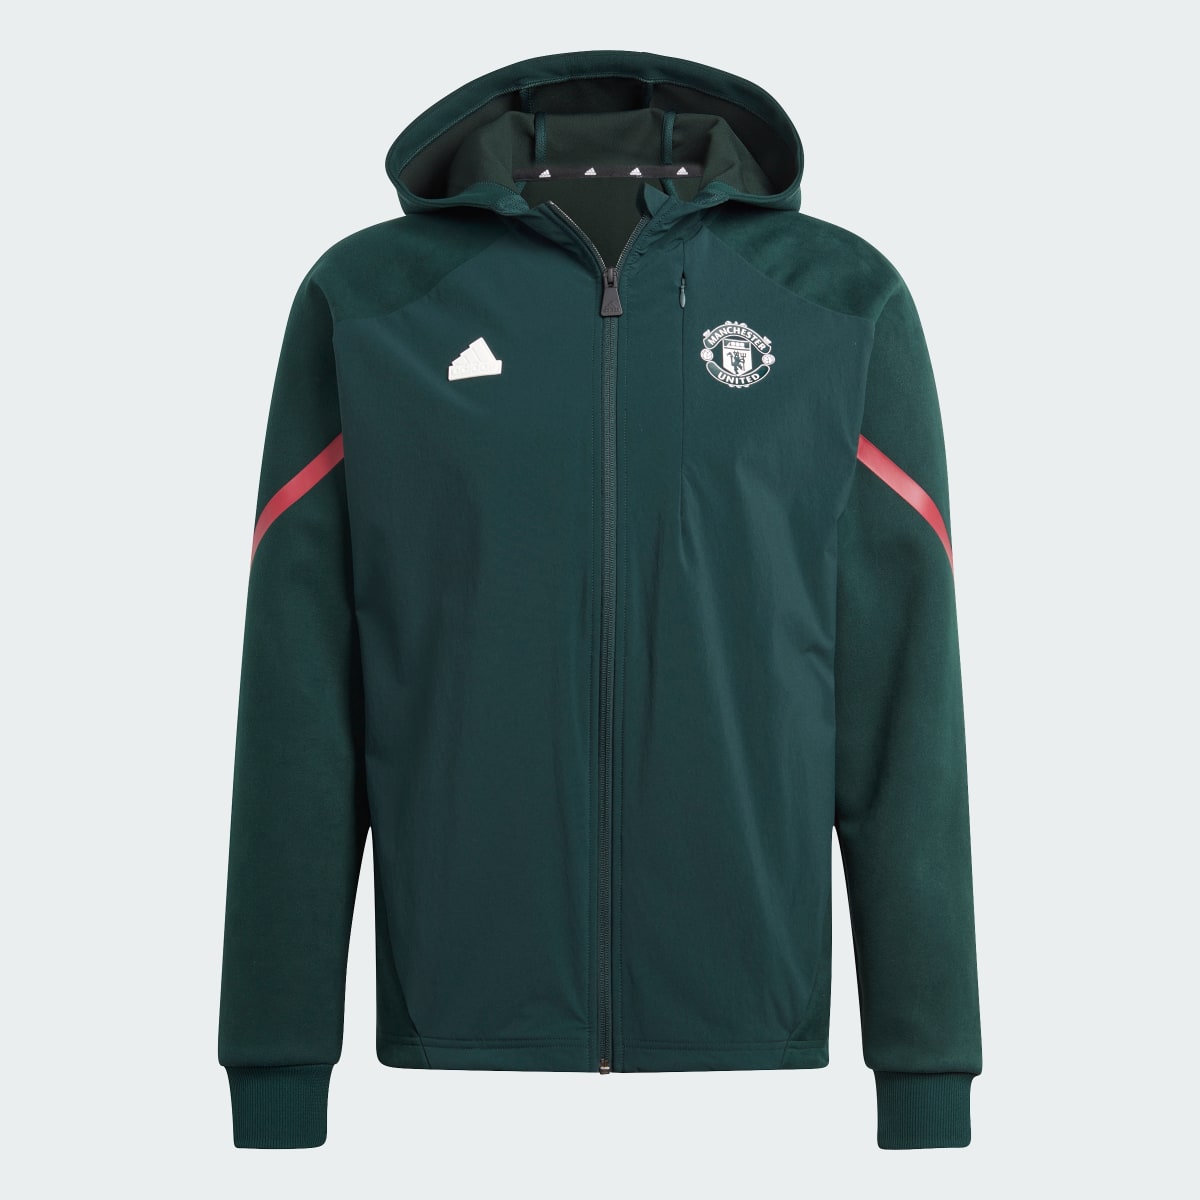 Adidas Veste à capuche entièrement zippée Manchester United Designed for Gameday. 5